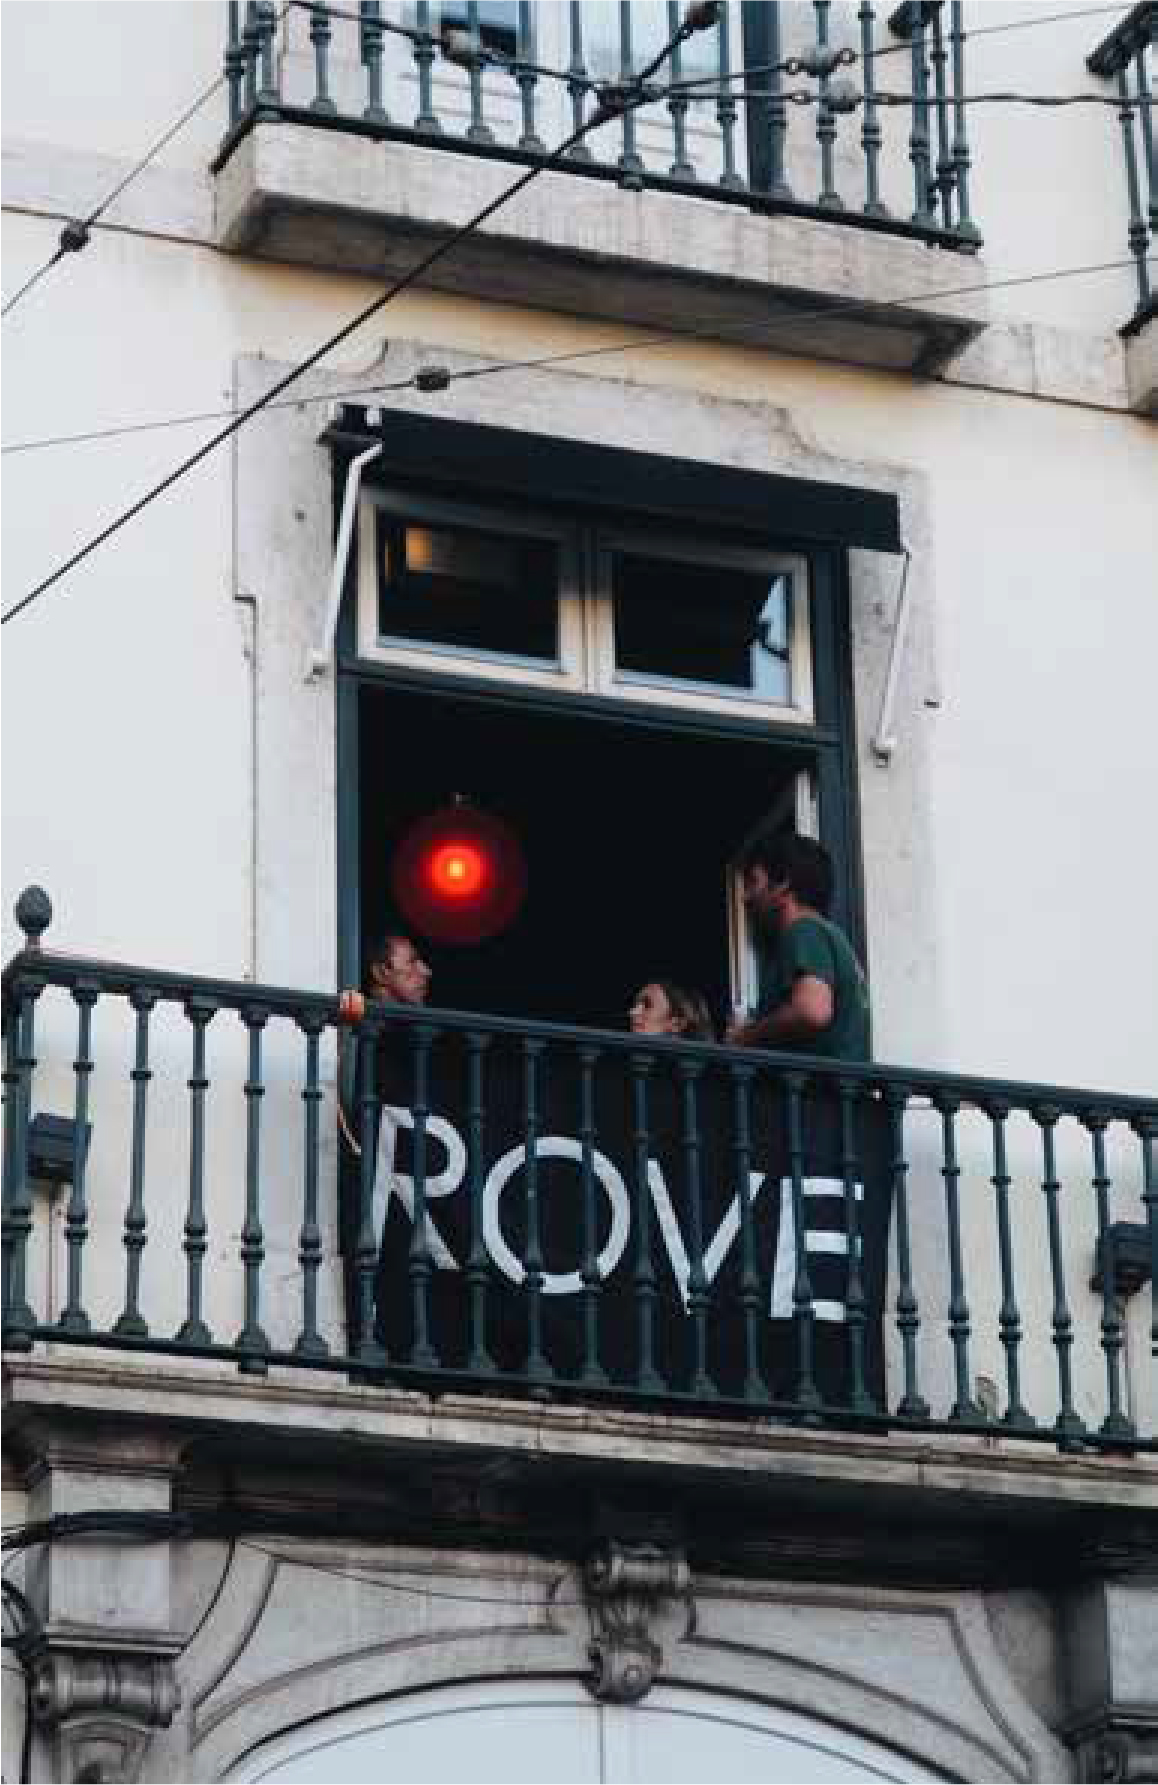 rove-bar-window